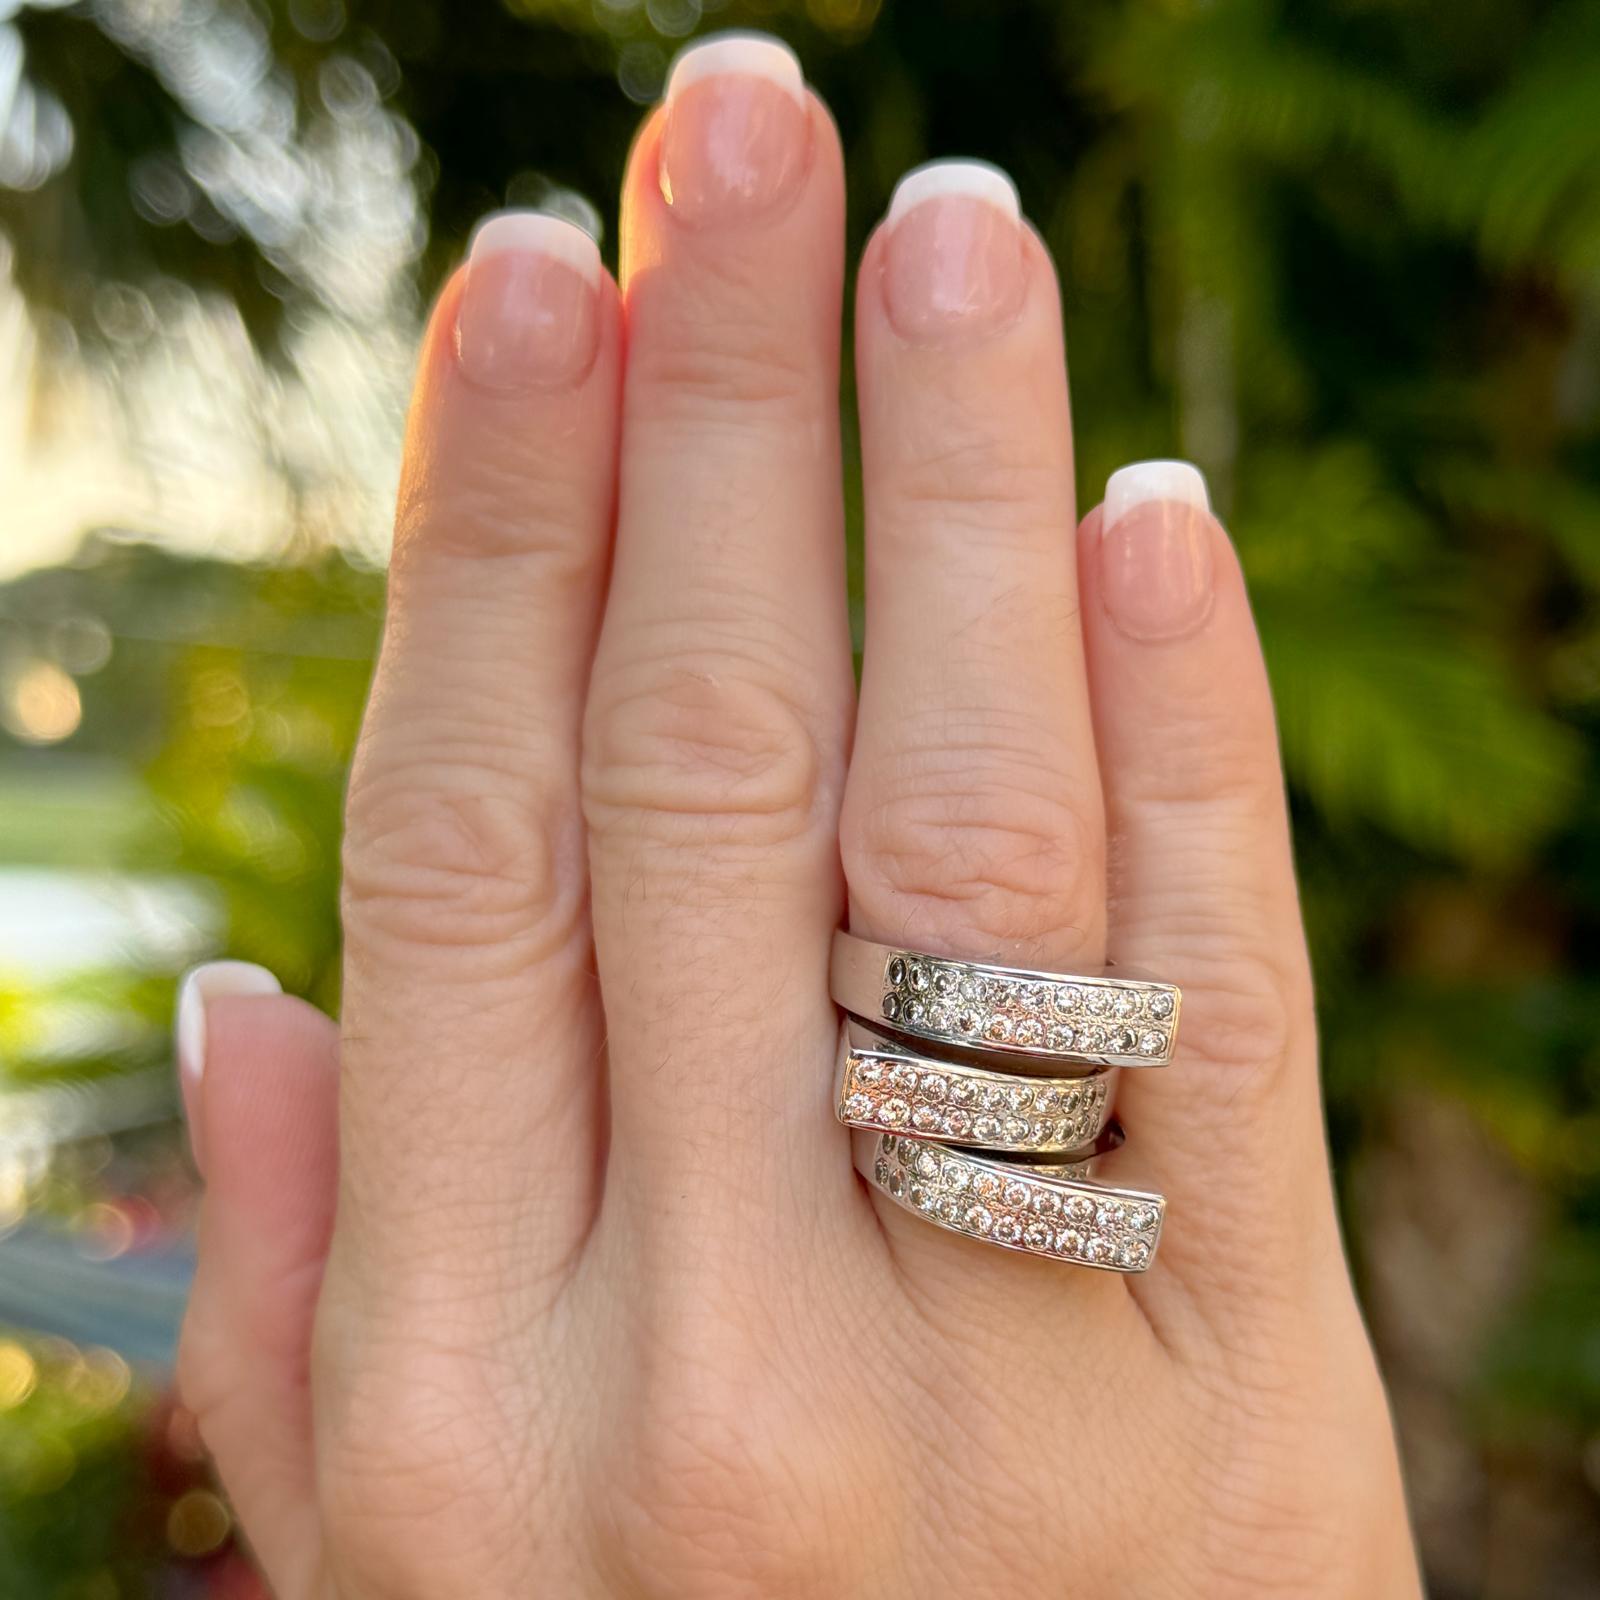 Set aus drei asymmetrischen Diamantstapeln aus 14 Karat Weißgold. Der Ring enthält 60 runde Diamanten im Brillantschliff mit einem Gesamtgewicht von etwa 1,20 Karat. Die Diamanten sind von der Farbe H-I und der Reinheit SI. Jeder Ring misst 5,5 mm